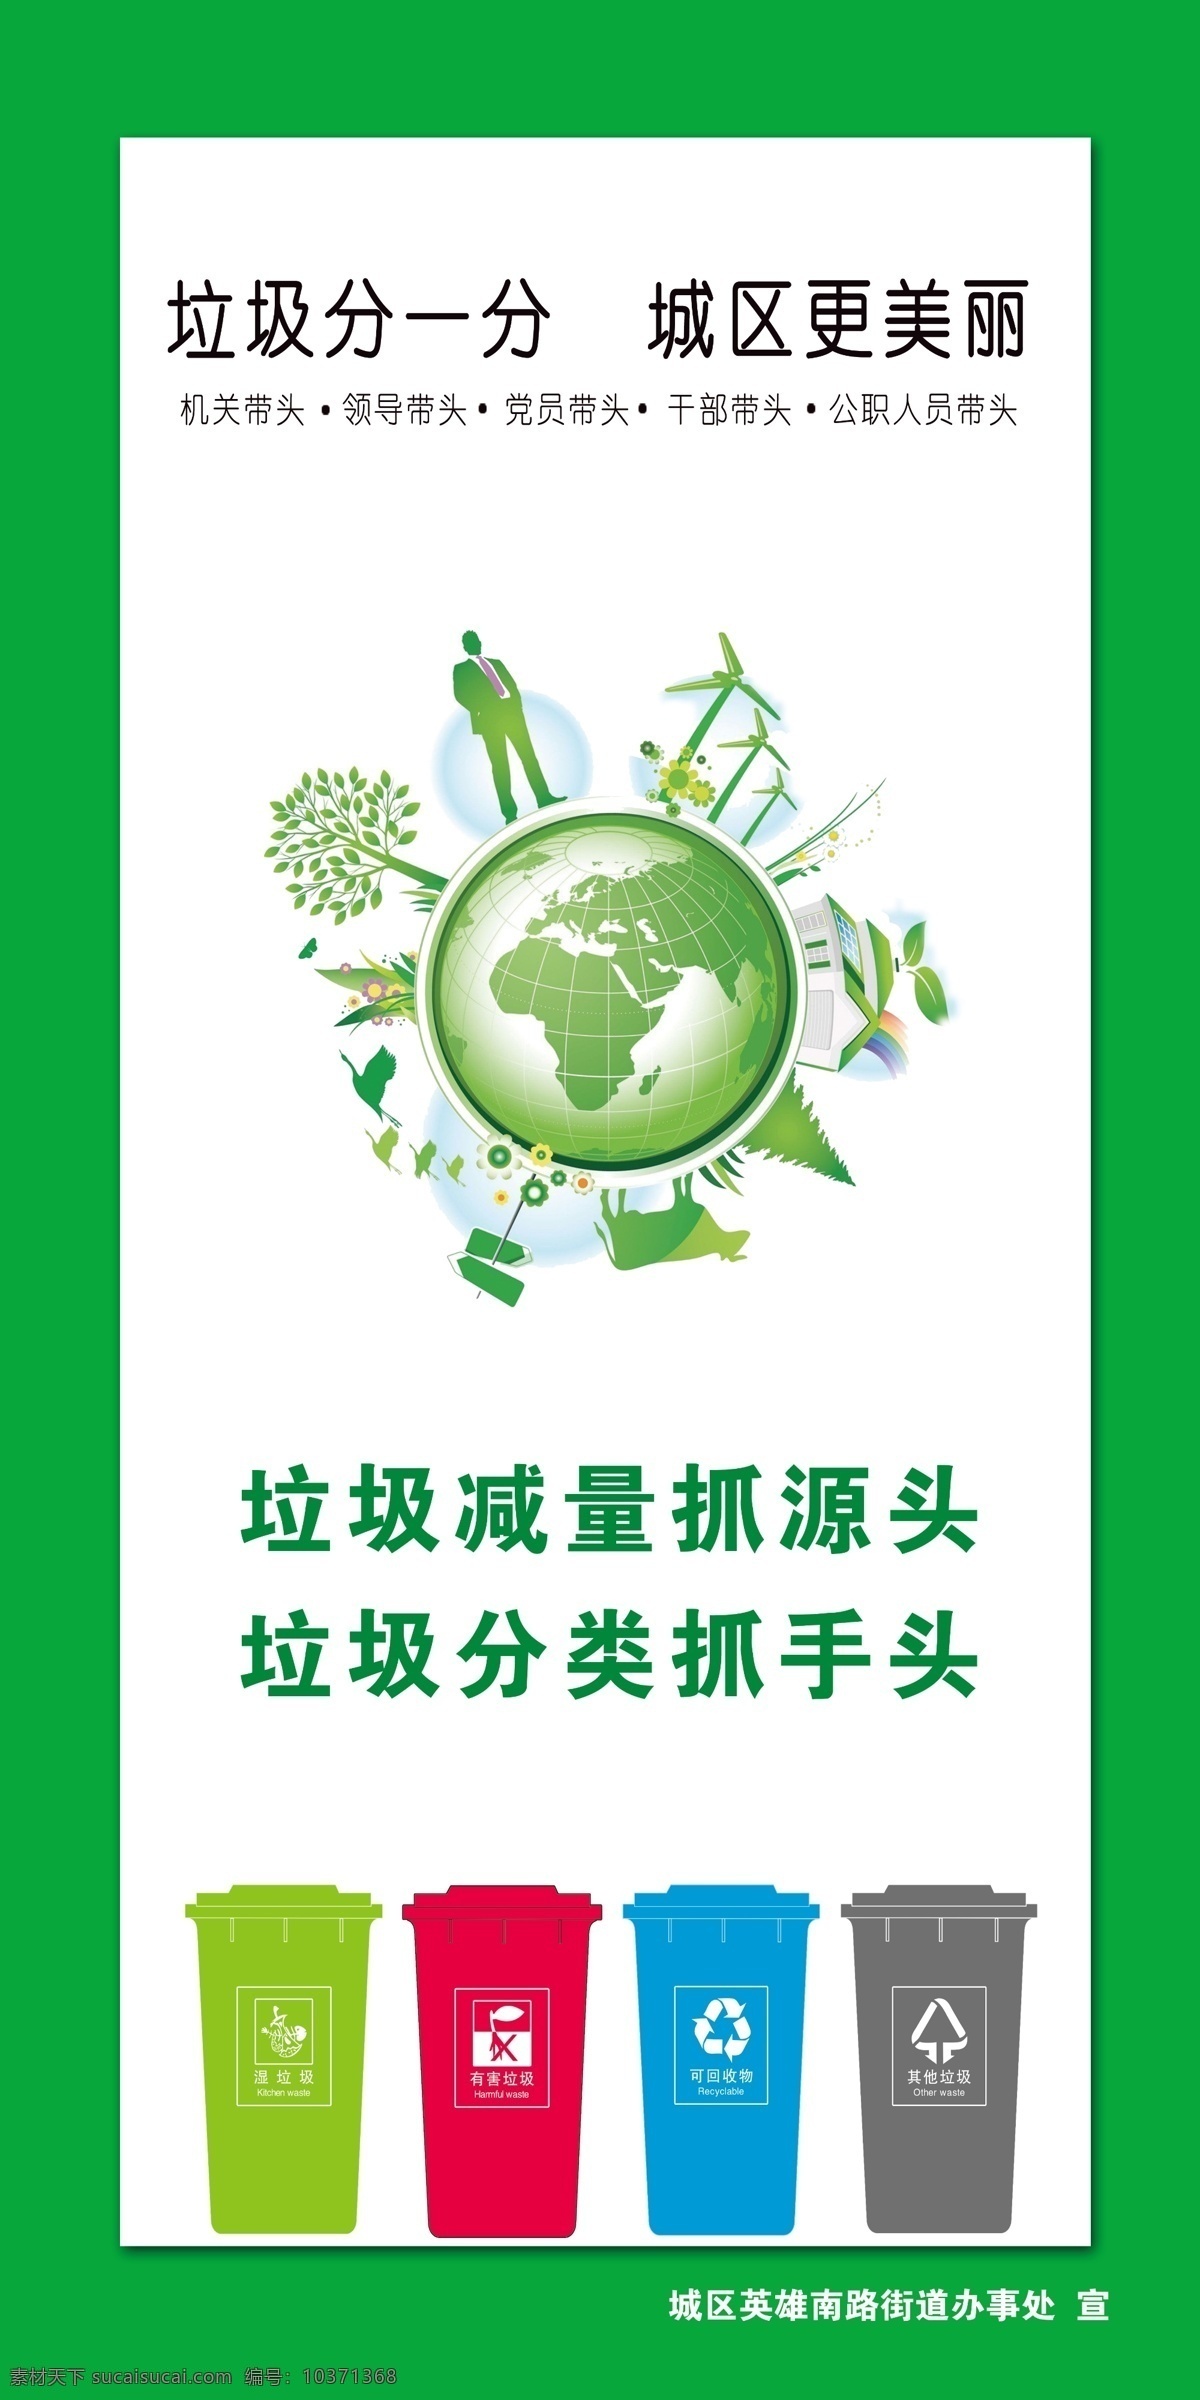 垃圾分类 环保 绿色地球 绿色展板 绿色海报 绿色背景 垃圾桶 环保图标 环保矢量图 地球矢量图 展板 海报 分层